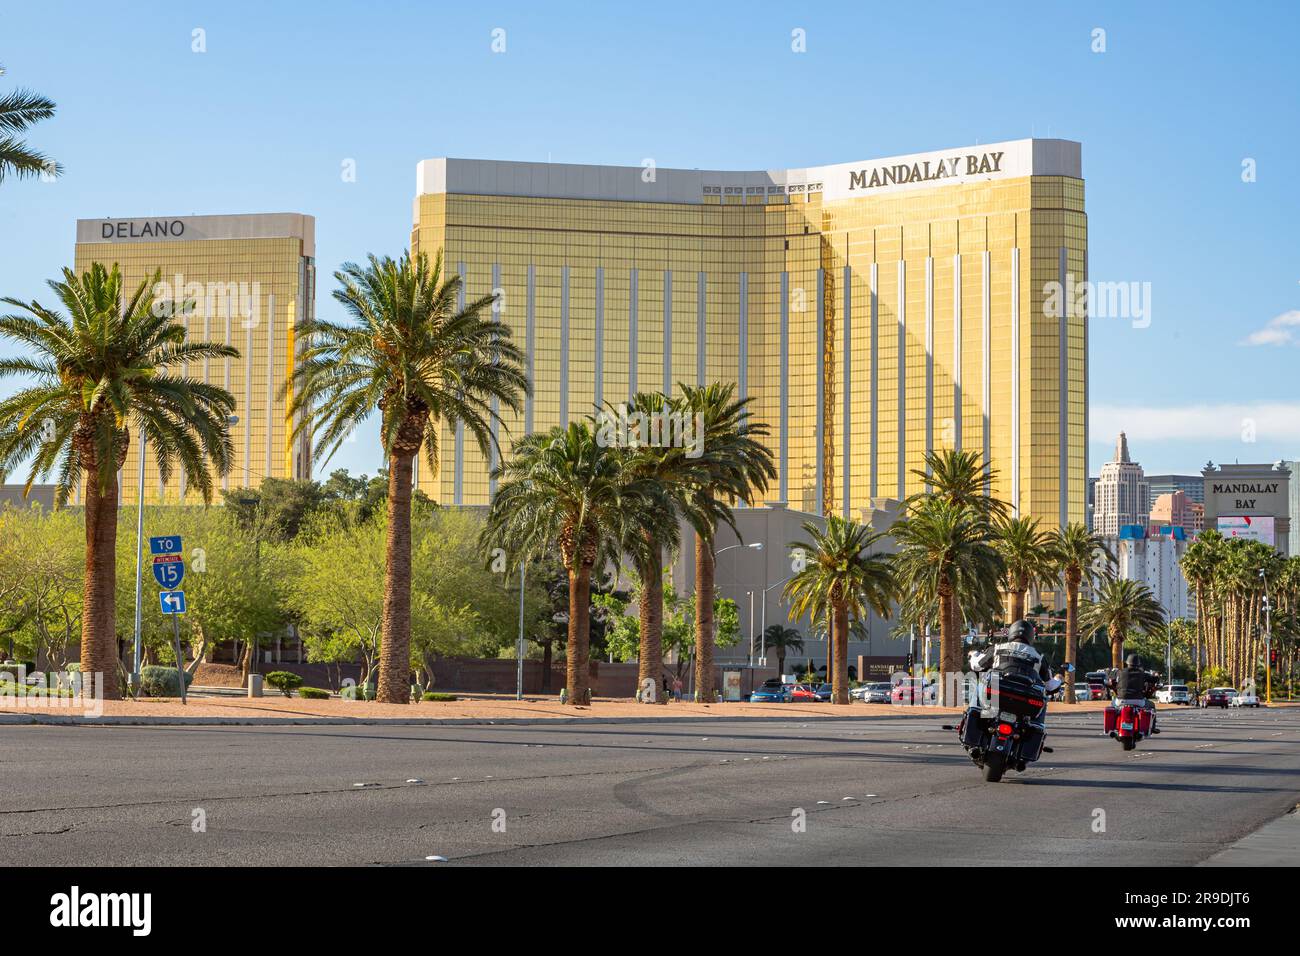 Las Vegas, Nevada - Aprile 2017: Mandalay Bay. Entrando a Las Vegas, Mandalay Bay è il primo hotel sul viale principale della città. La facciata dorata della Baia di Mandalay risplende nei raggi del sole. Foto Stock